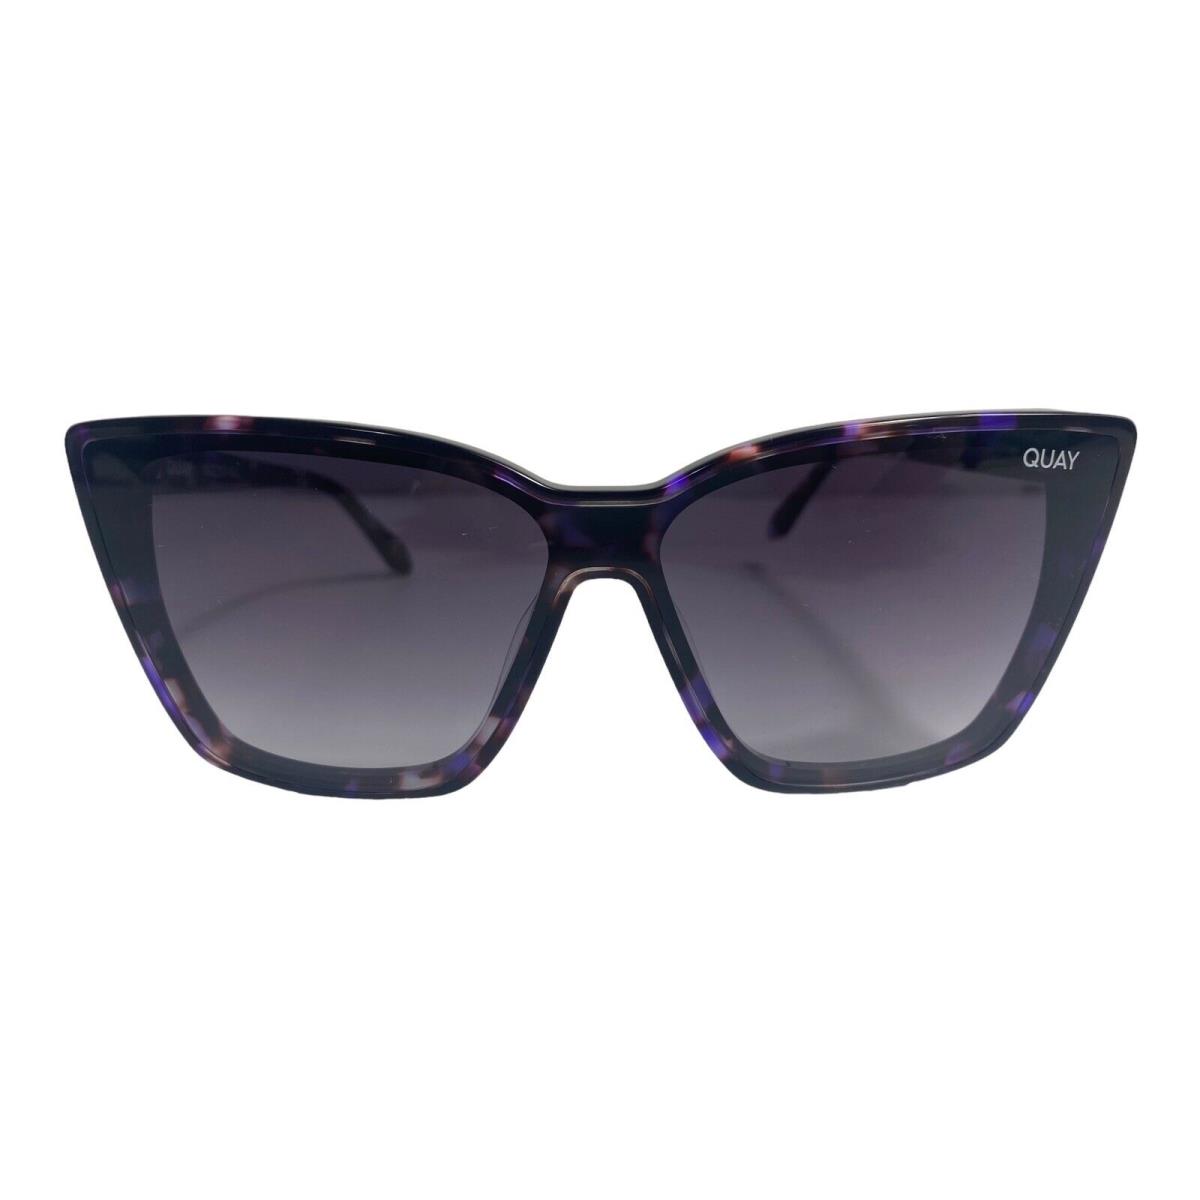 Quay Australia Confidential Purple Tort Festival Sunglasses Sunnies